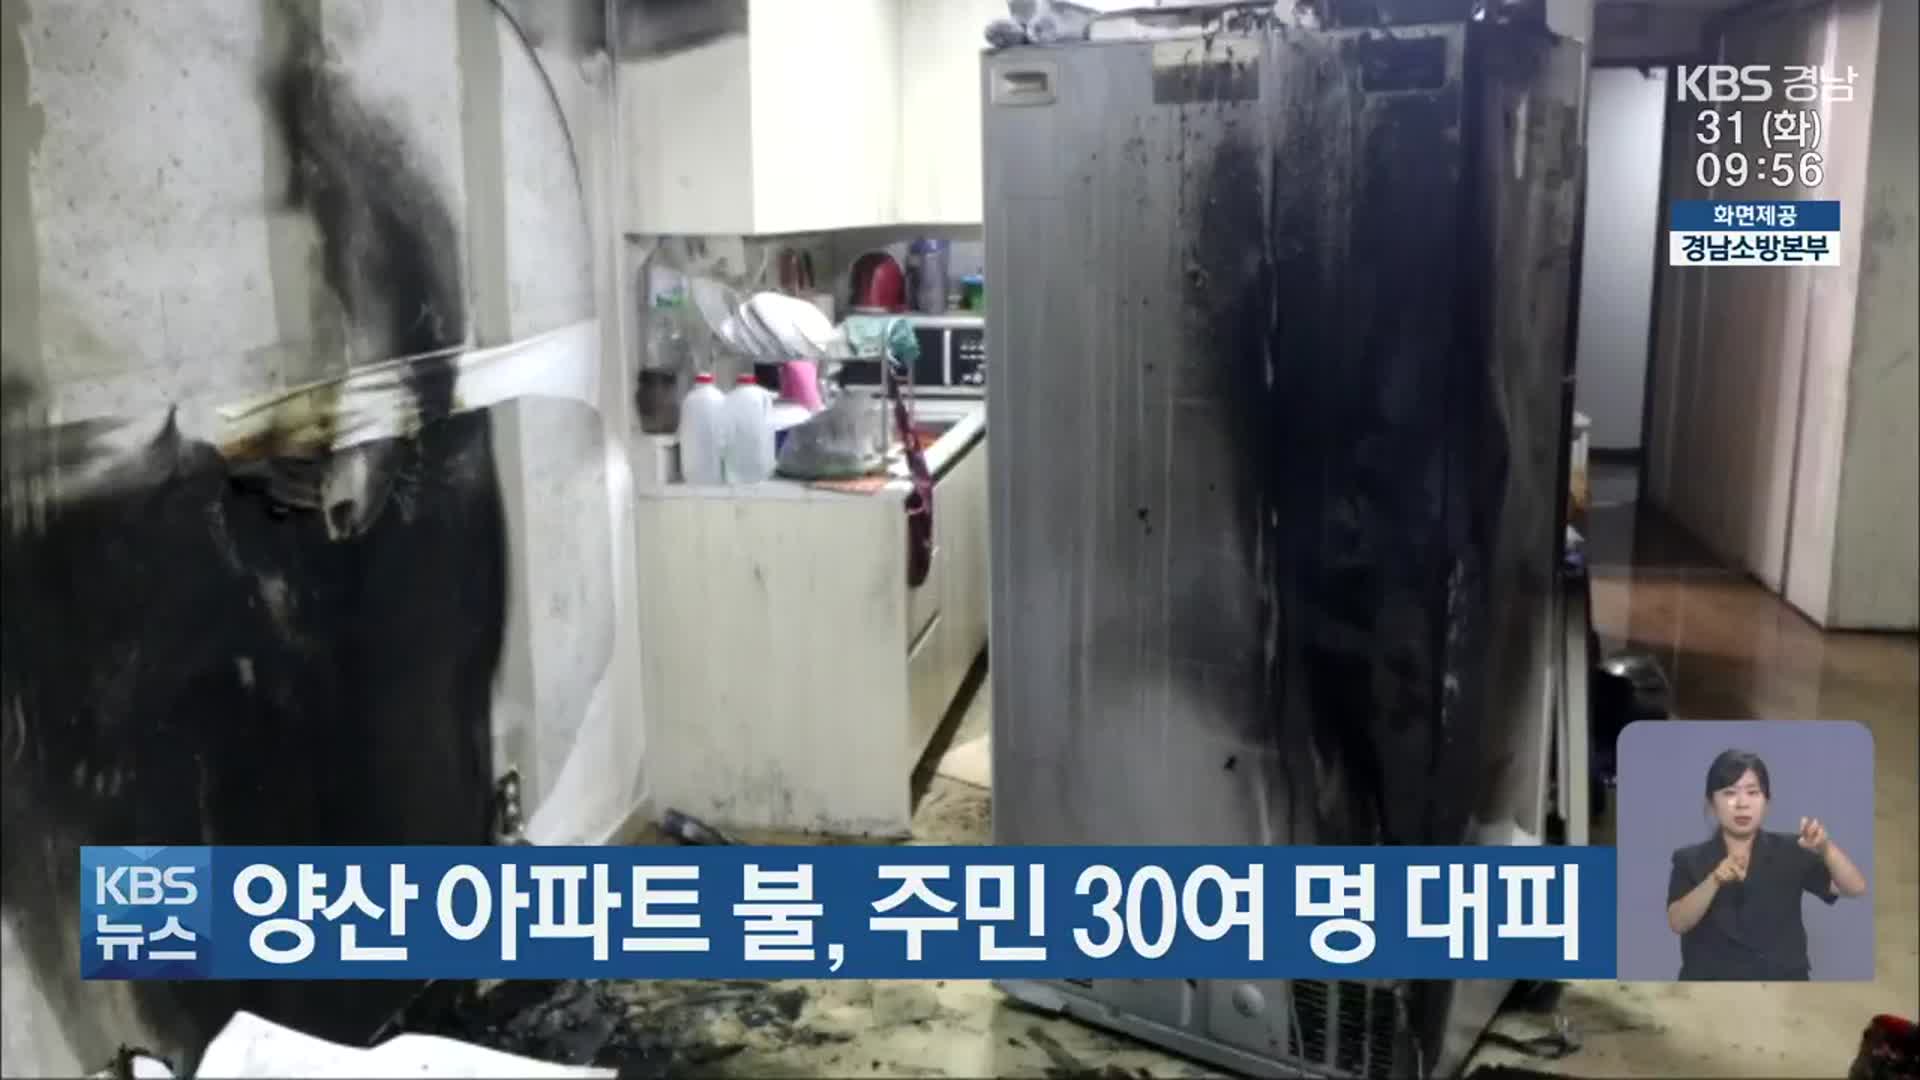 양산 아파트 불, 주민 30여 명 대피